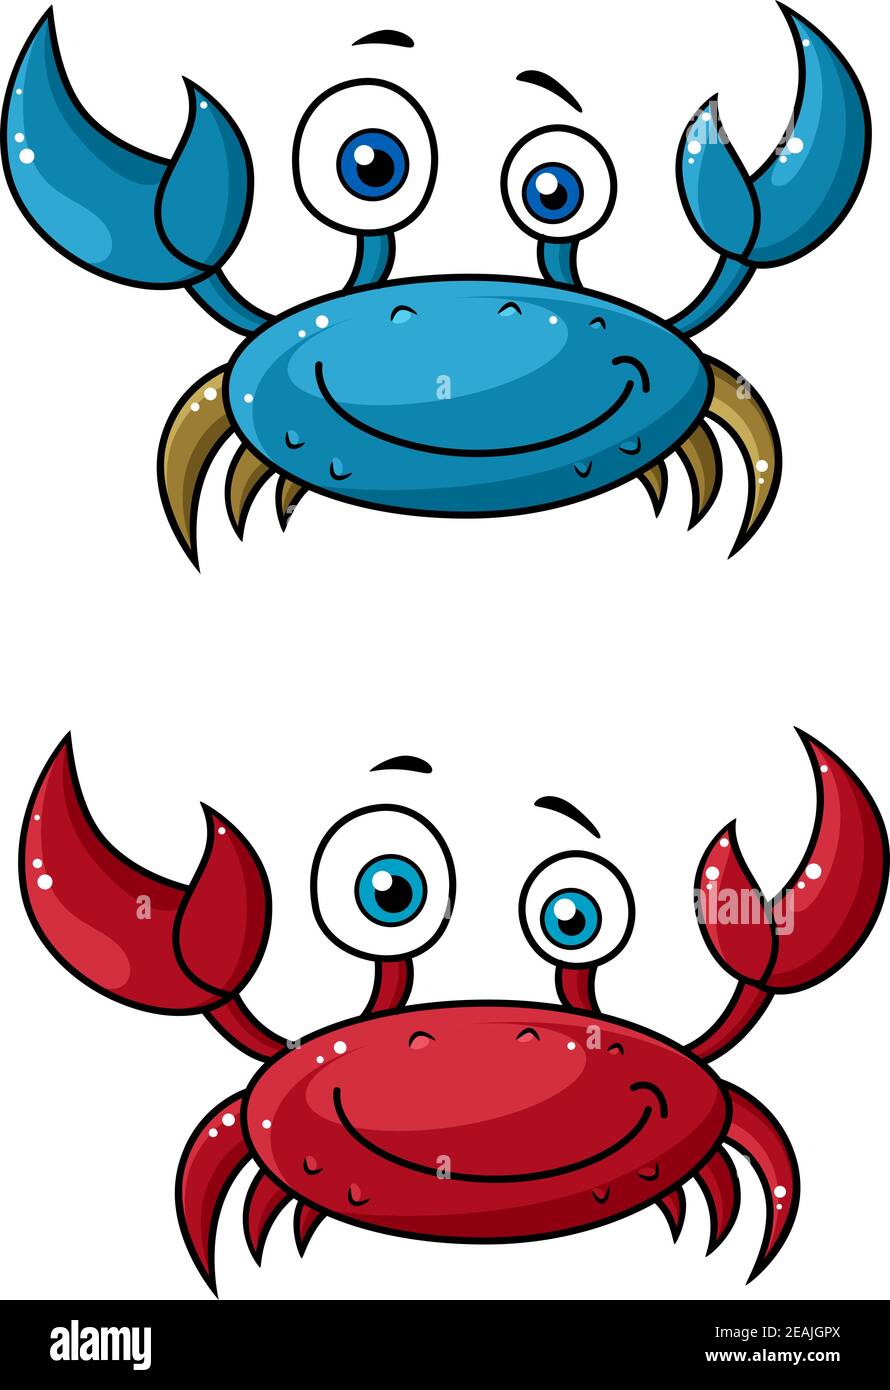 Rot und blau lustig lächelnd Cartoon Krabben Charaktere mit angehoben Krallen isoliert auf weißem Hintergrund Stock Vektor